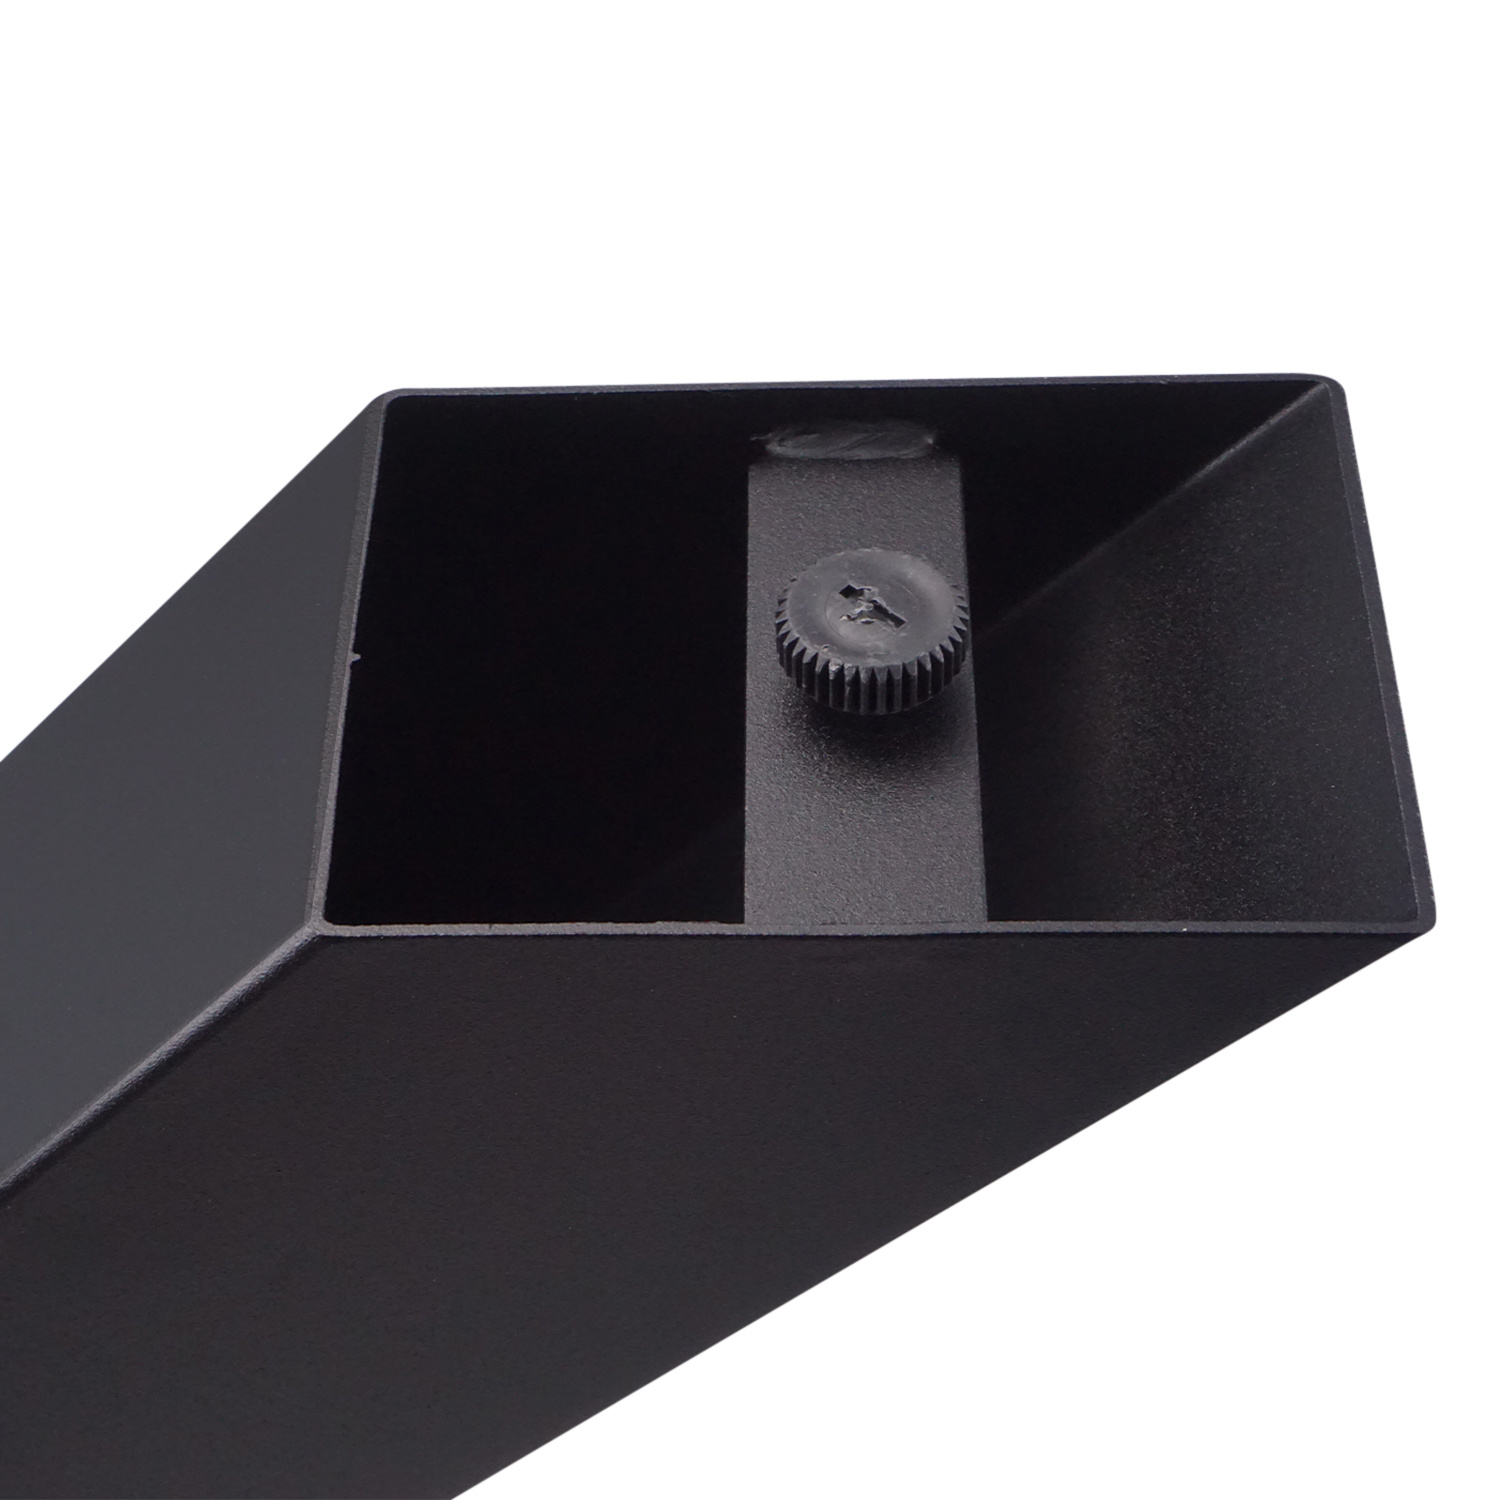  Tischbeine X Metall SET (2 Stück) - 10x10 cm - 78 cm breit - 72 cm hoch - X-form Tischkufen / Tischgestell beschichtet - Schwarz & Weiß